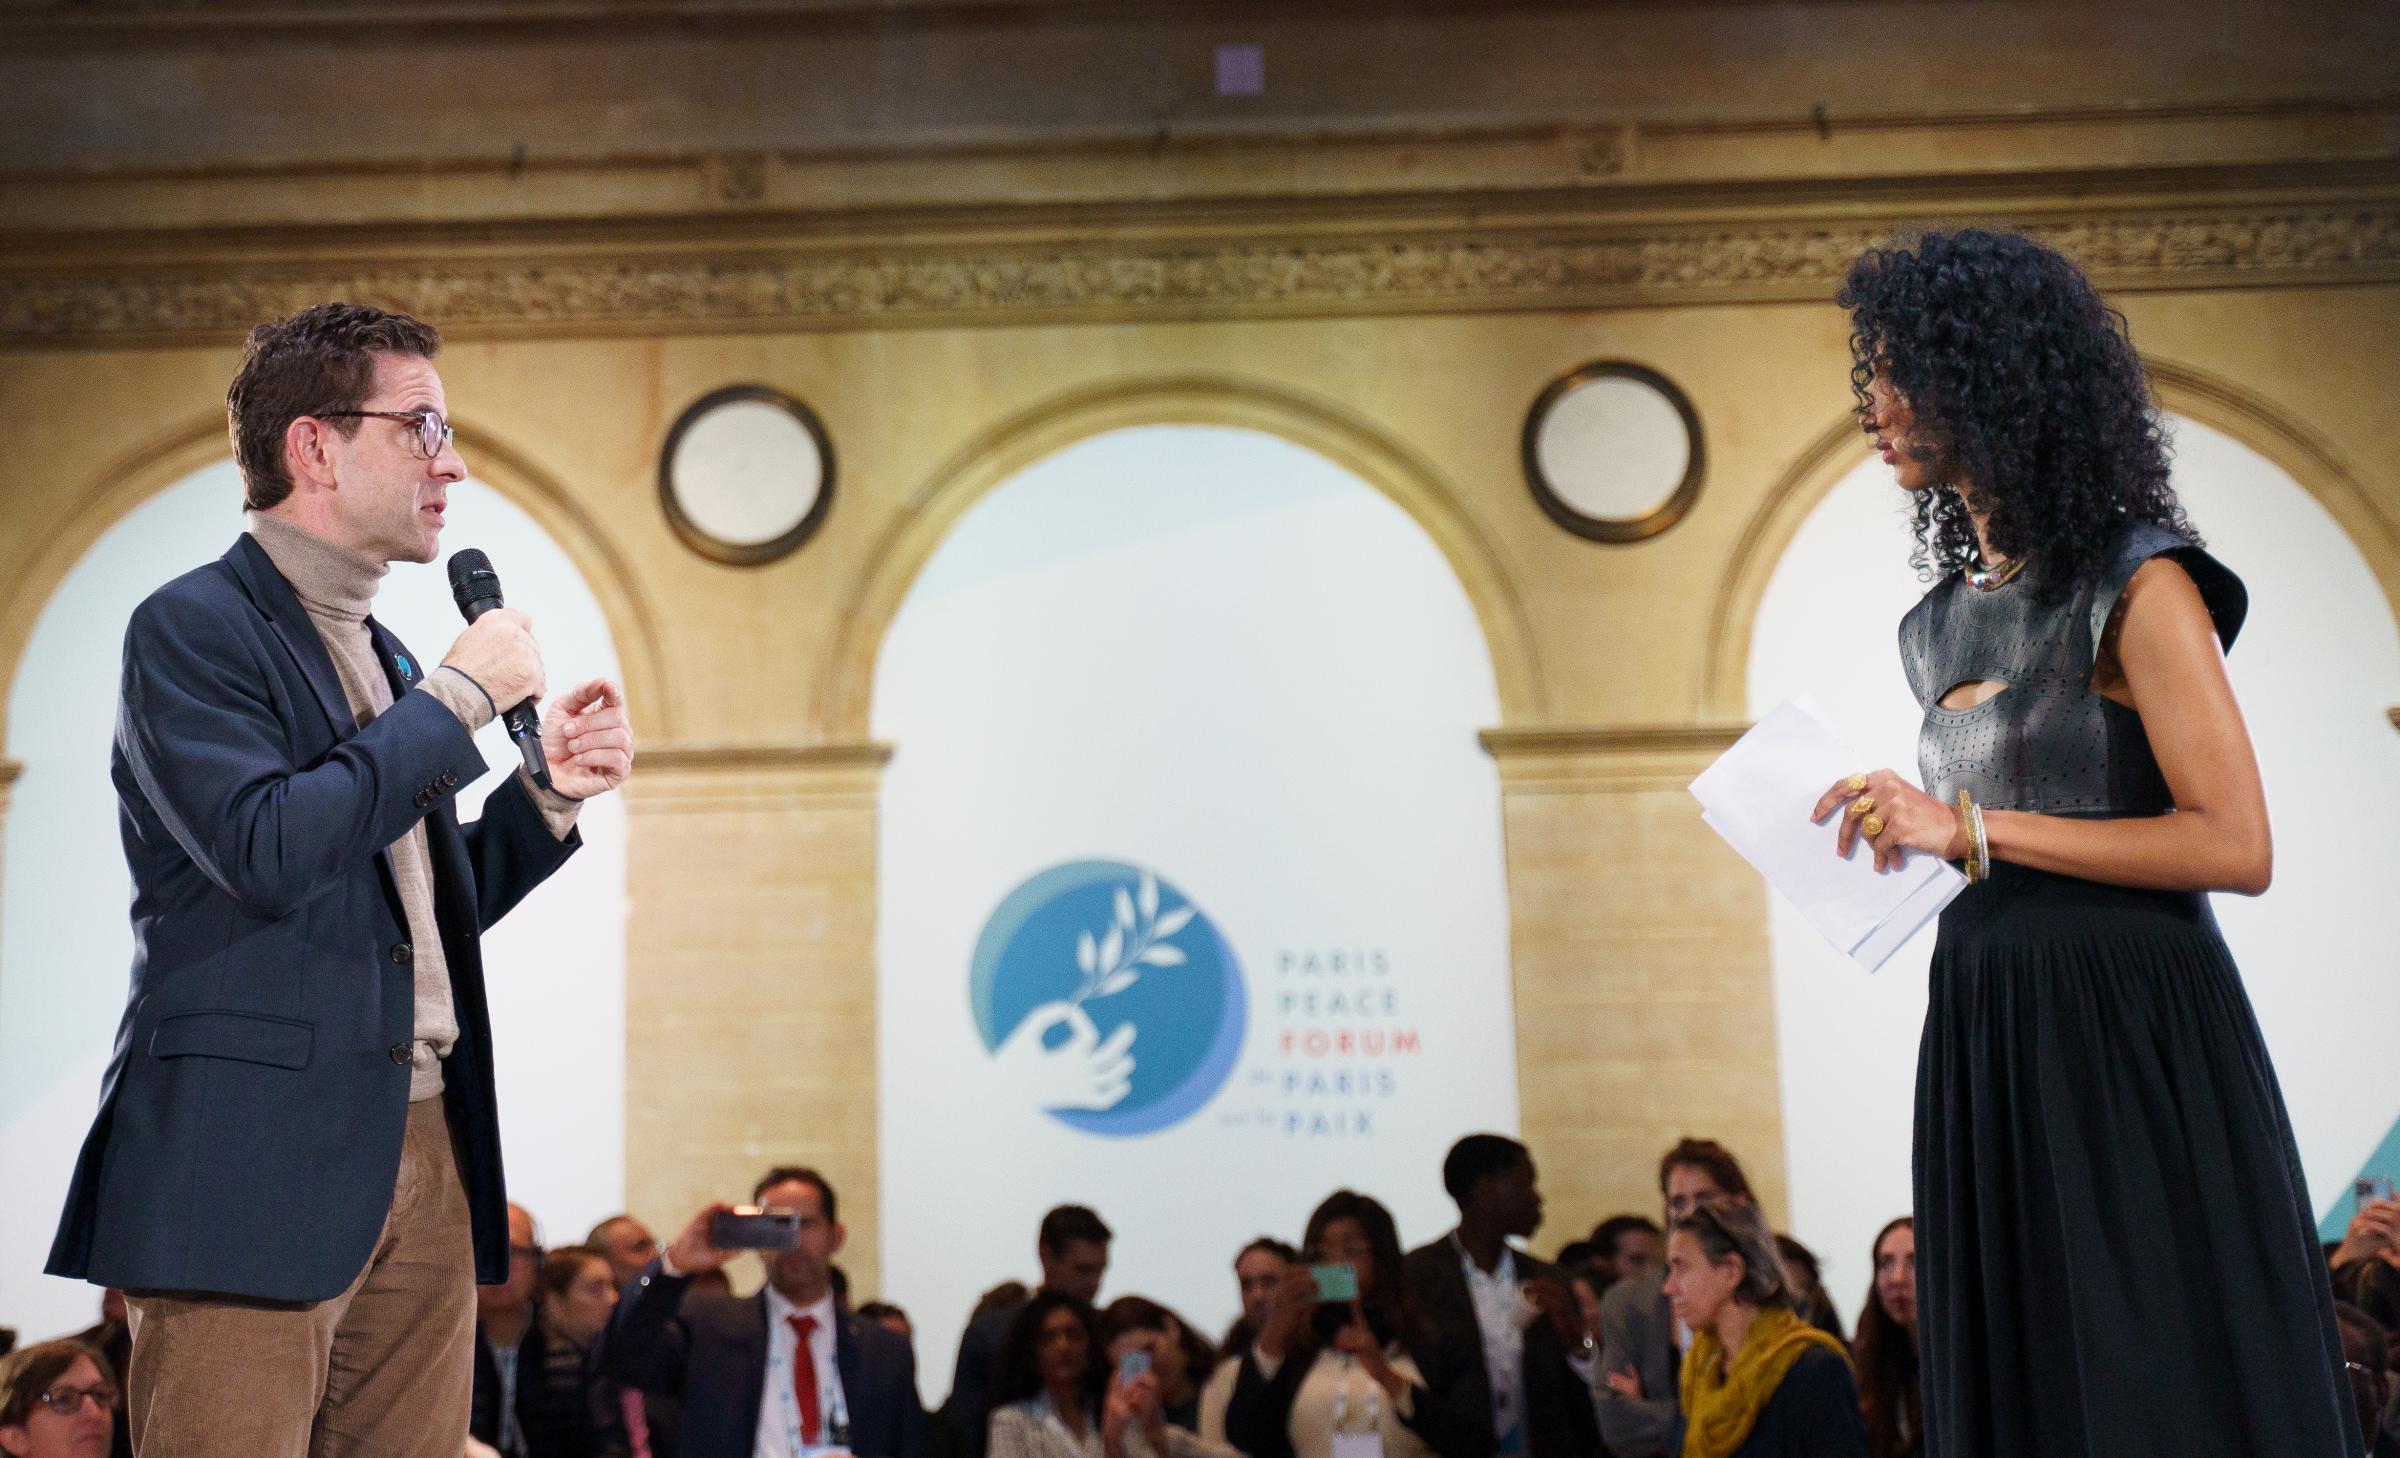 Paris Peace Forum: Riding out the multicrisis